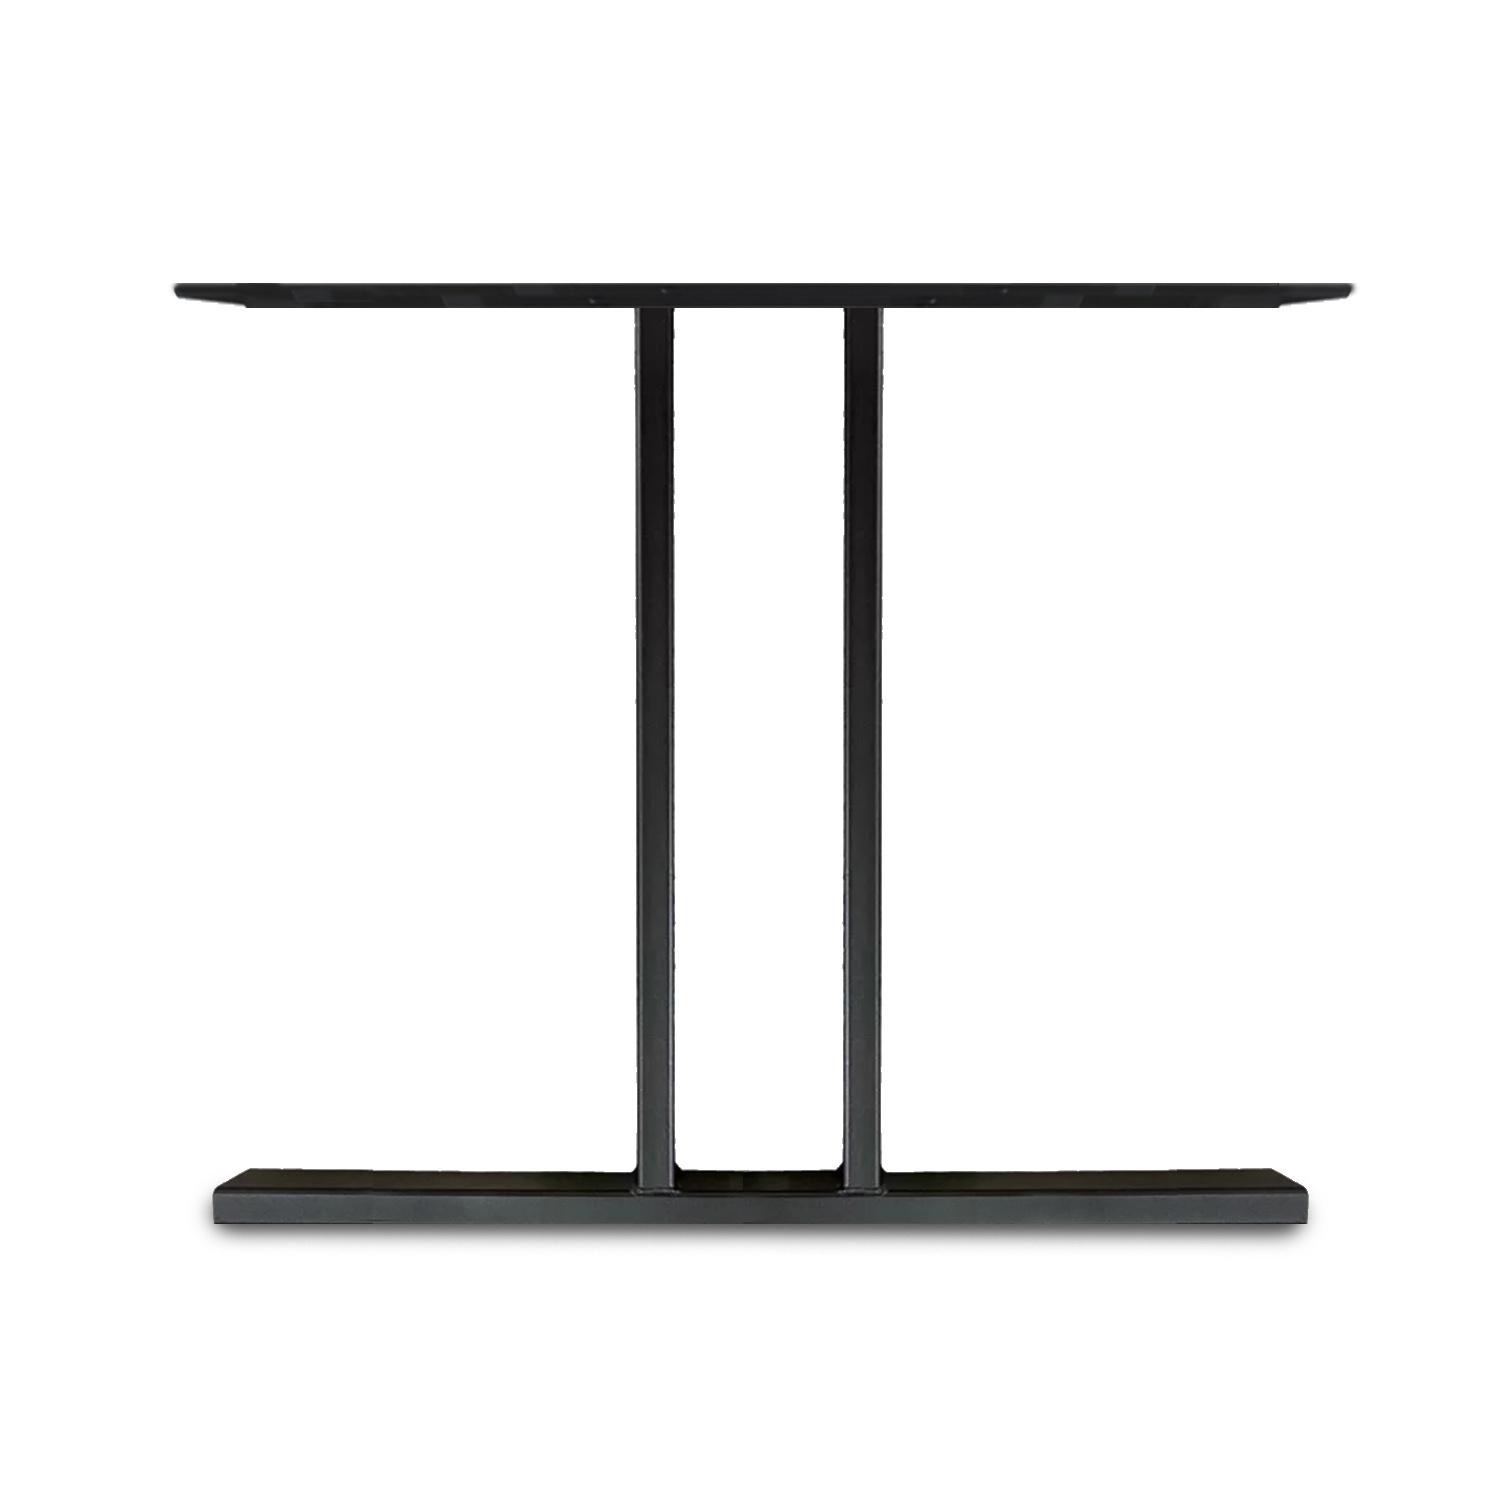  Tischbeine I Metall schlank - SET (2 Stück) - 2x10 cm - 78 cm breit - 72 cm hoch - T-form Tischkufen / Tischgestell beschichtet - Schwarz